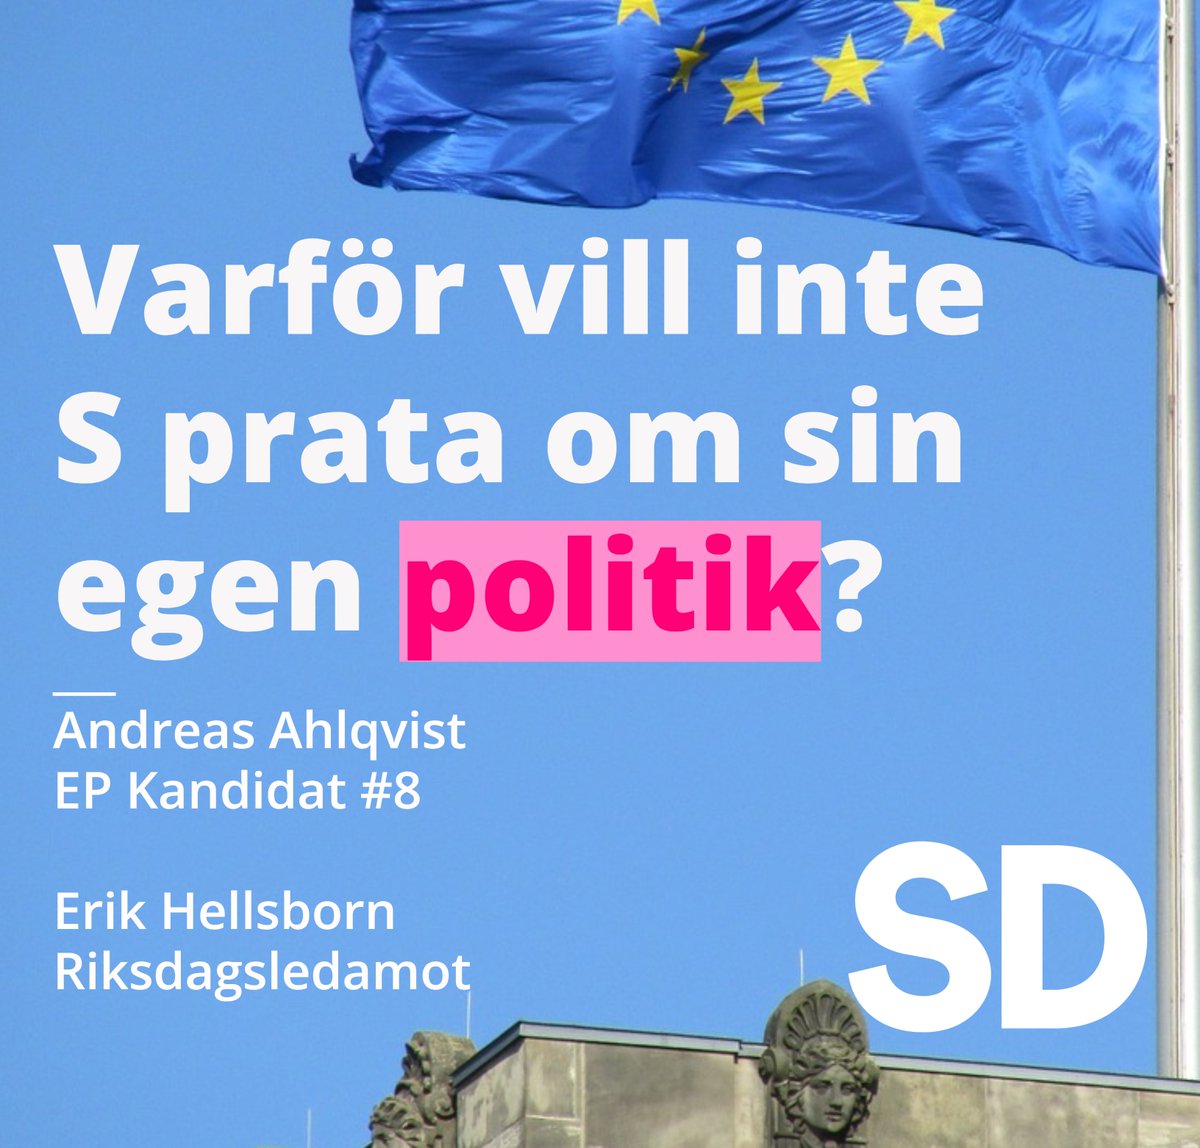 Följande insändare har skickats till de halländska lokaltidningarna:

VARFÖR VILL INTE S PRATA OM SIN EGEN POLITIK? 

Snart är det återigen dags att gå och rösta i valet till Europaparlamentet. Ett oerhört viktig val med tanke på hur mycket makt EU utövar över Sverige. Vi